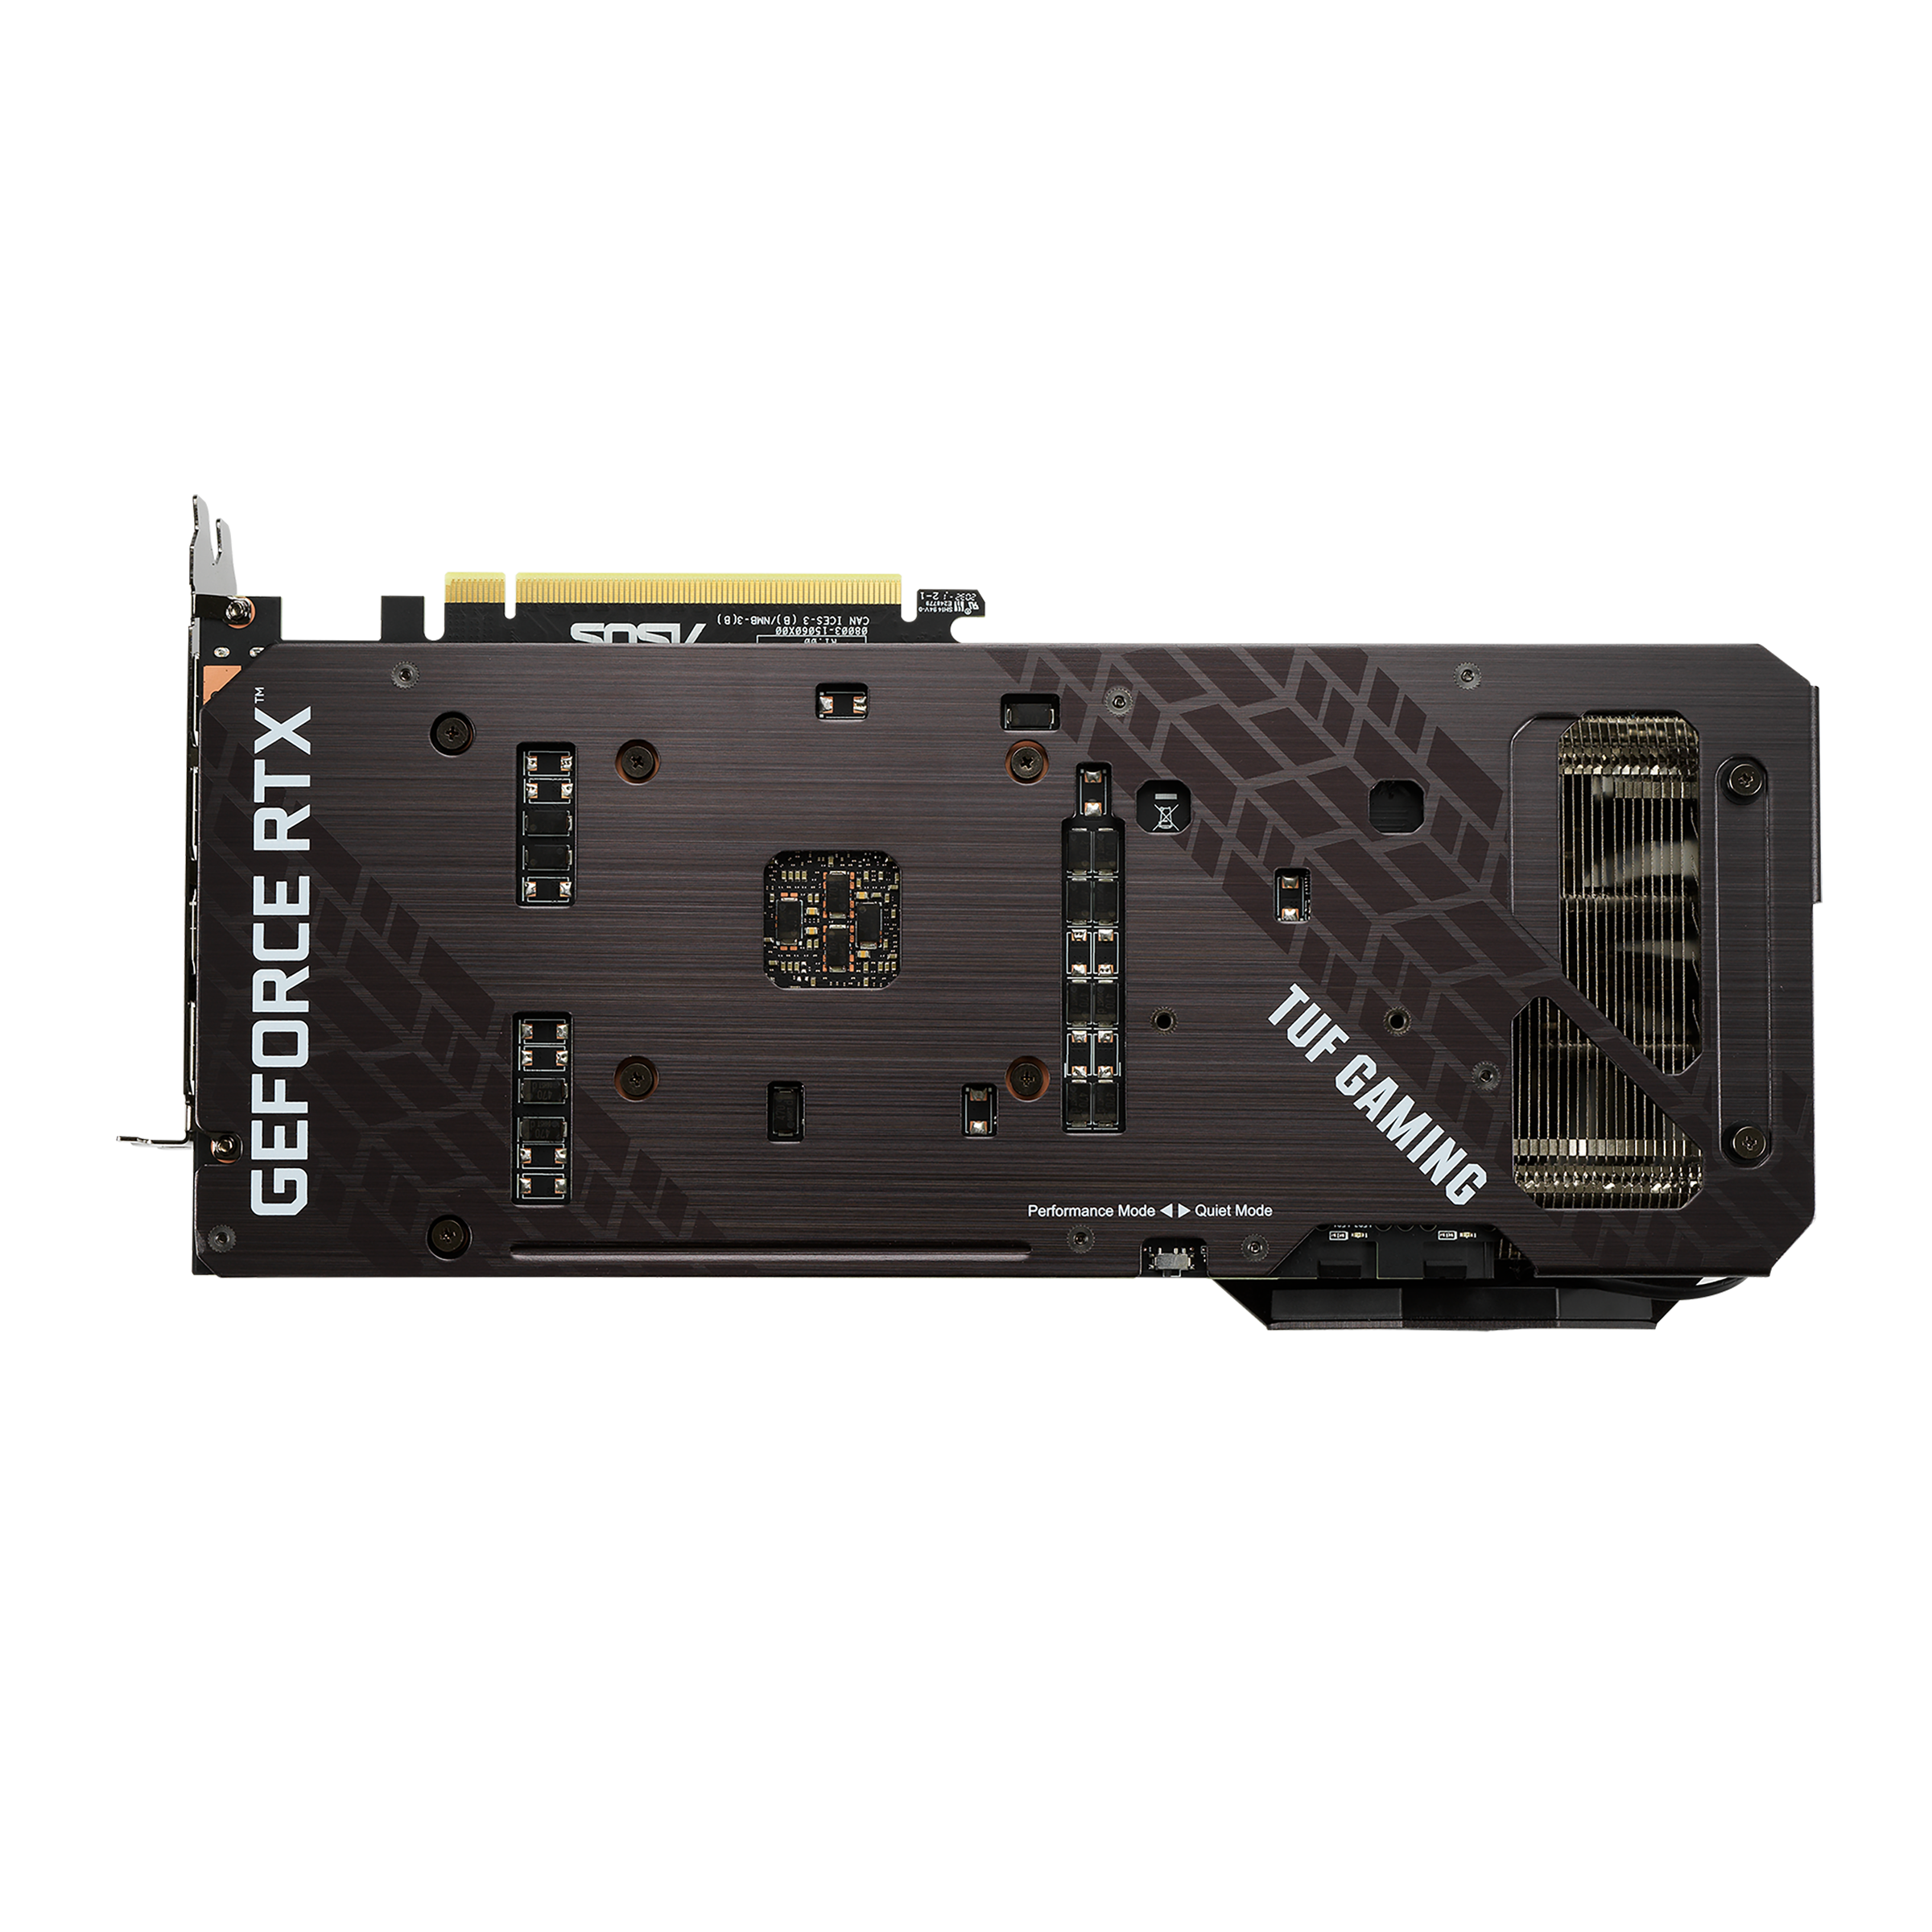 ASUS TUF Gaming GeForce RTX 3070